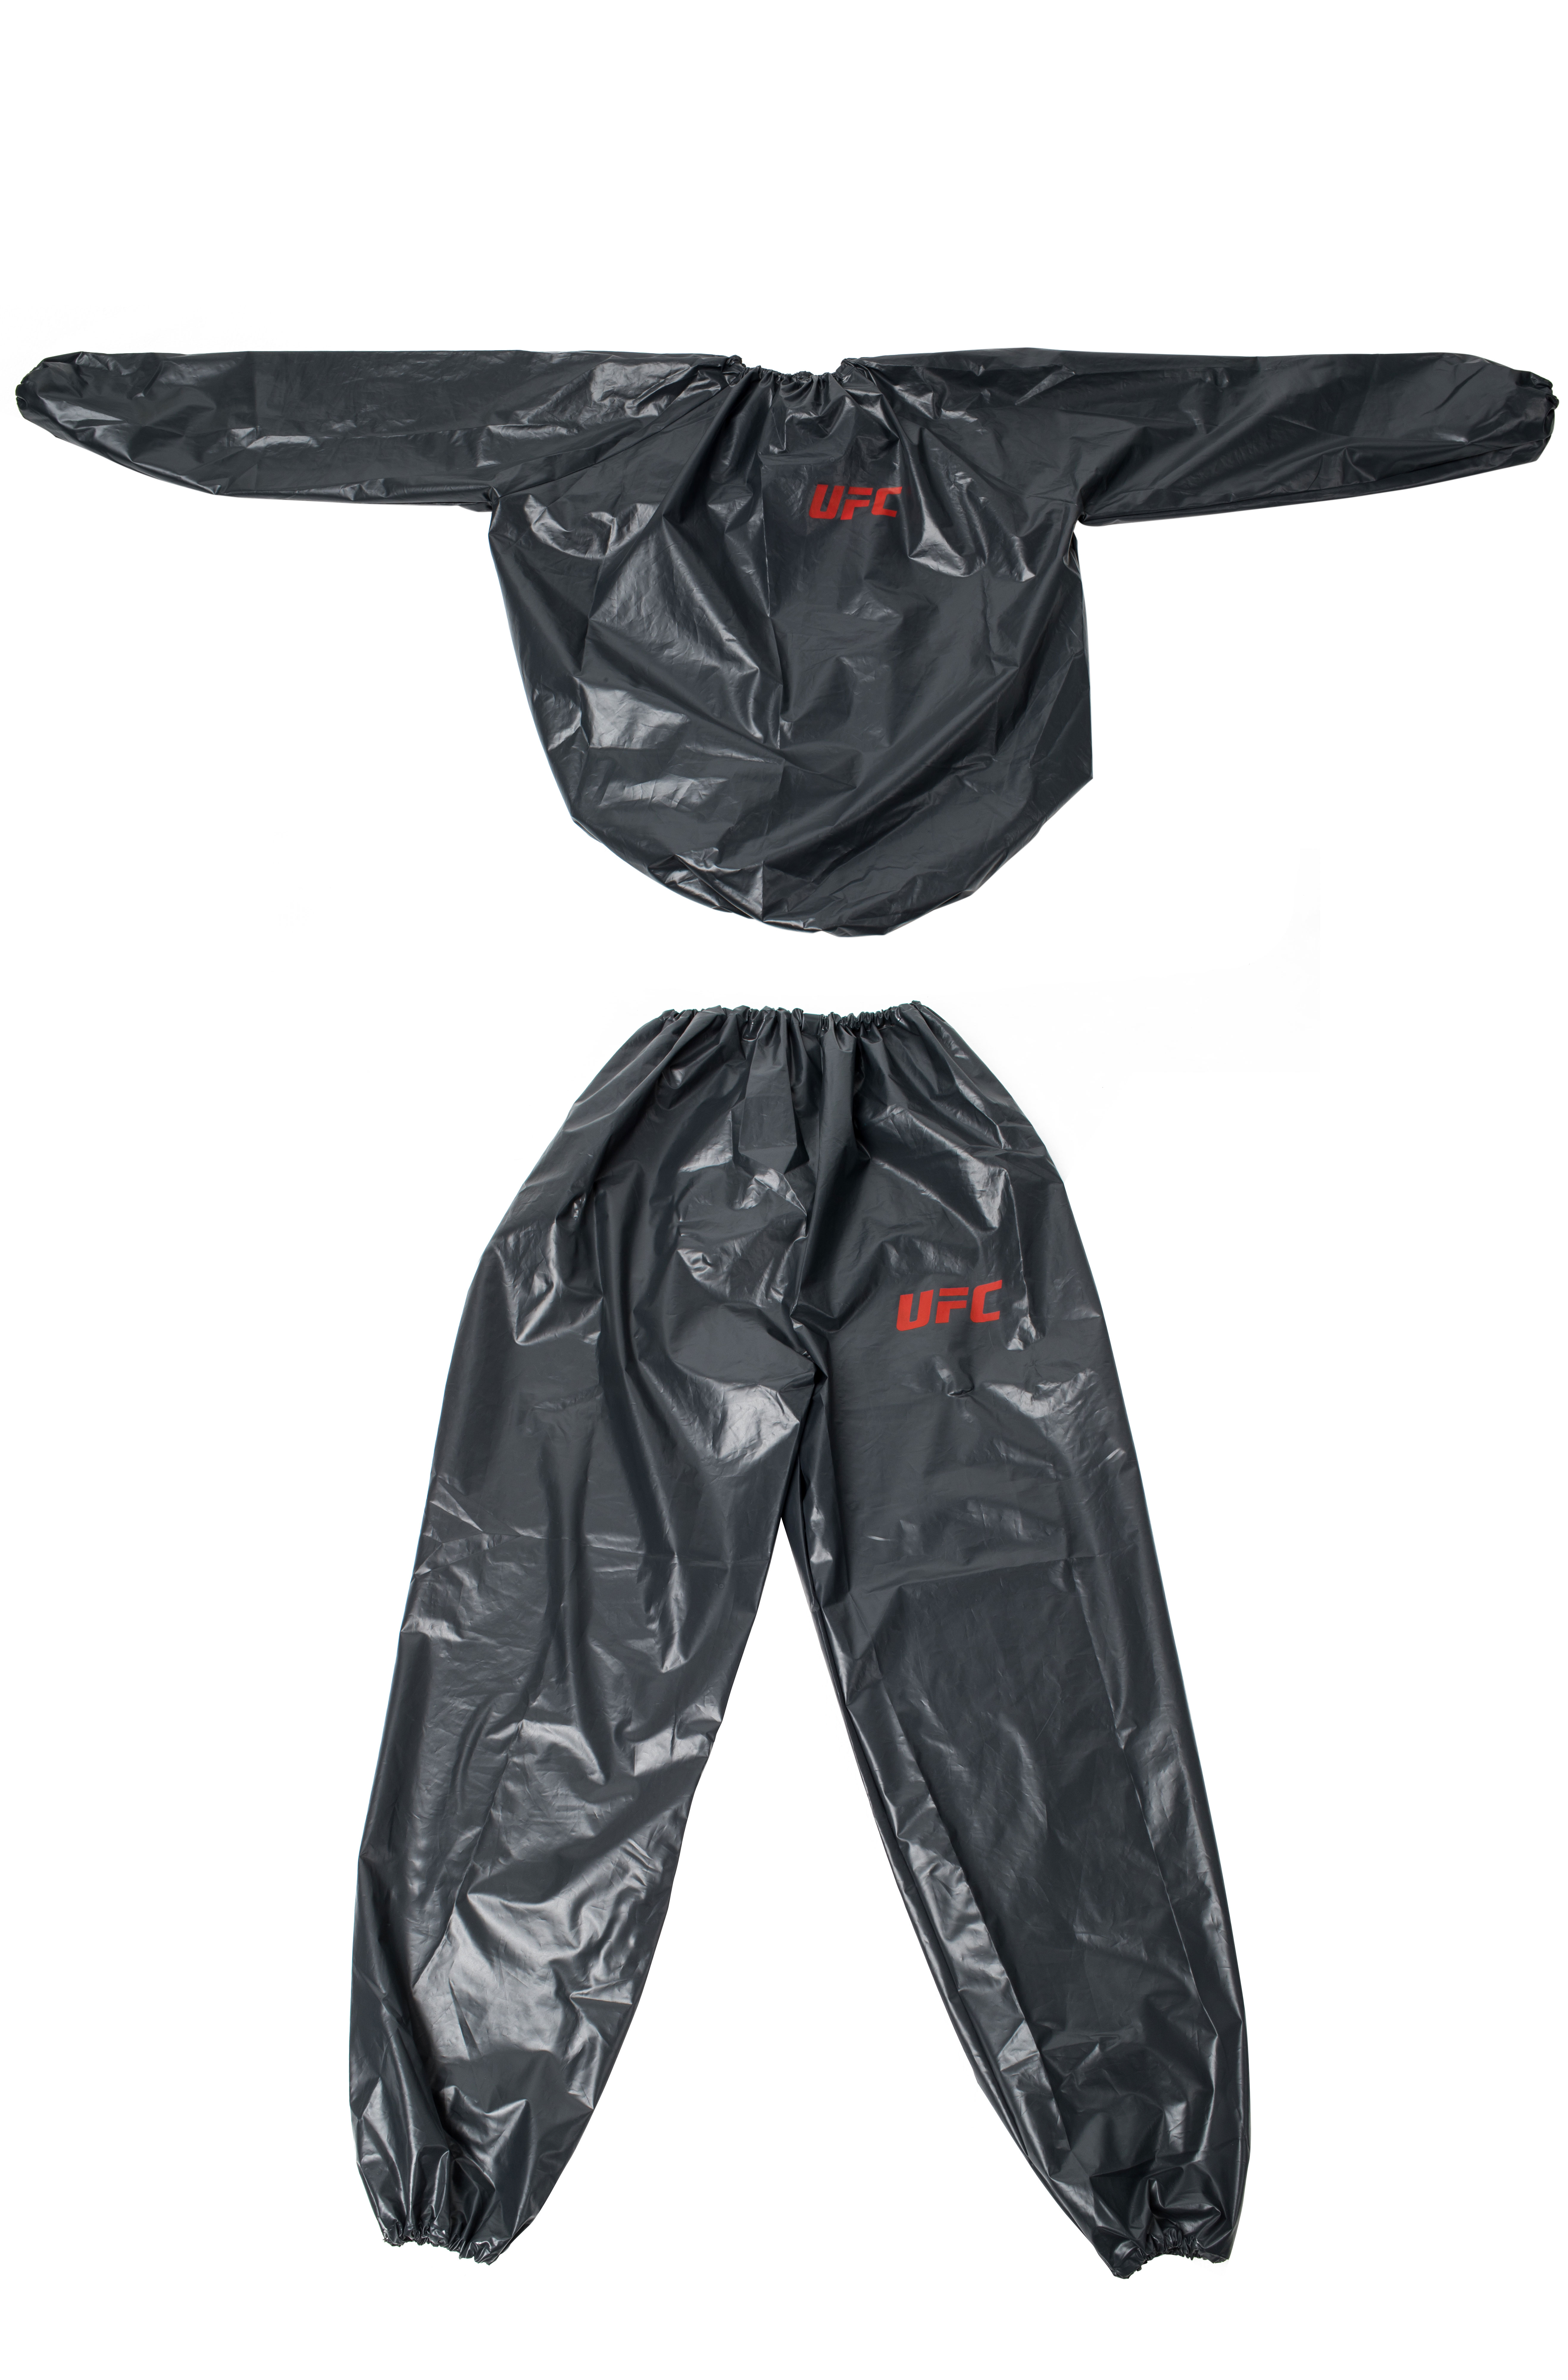 UFC Sauna Suit XL